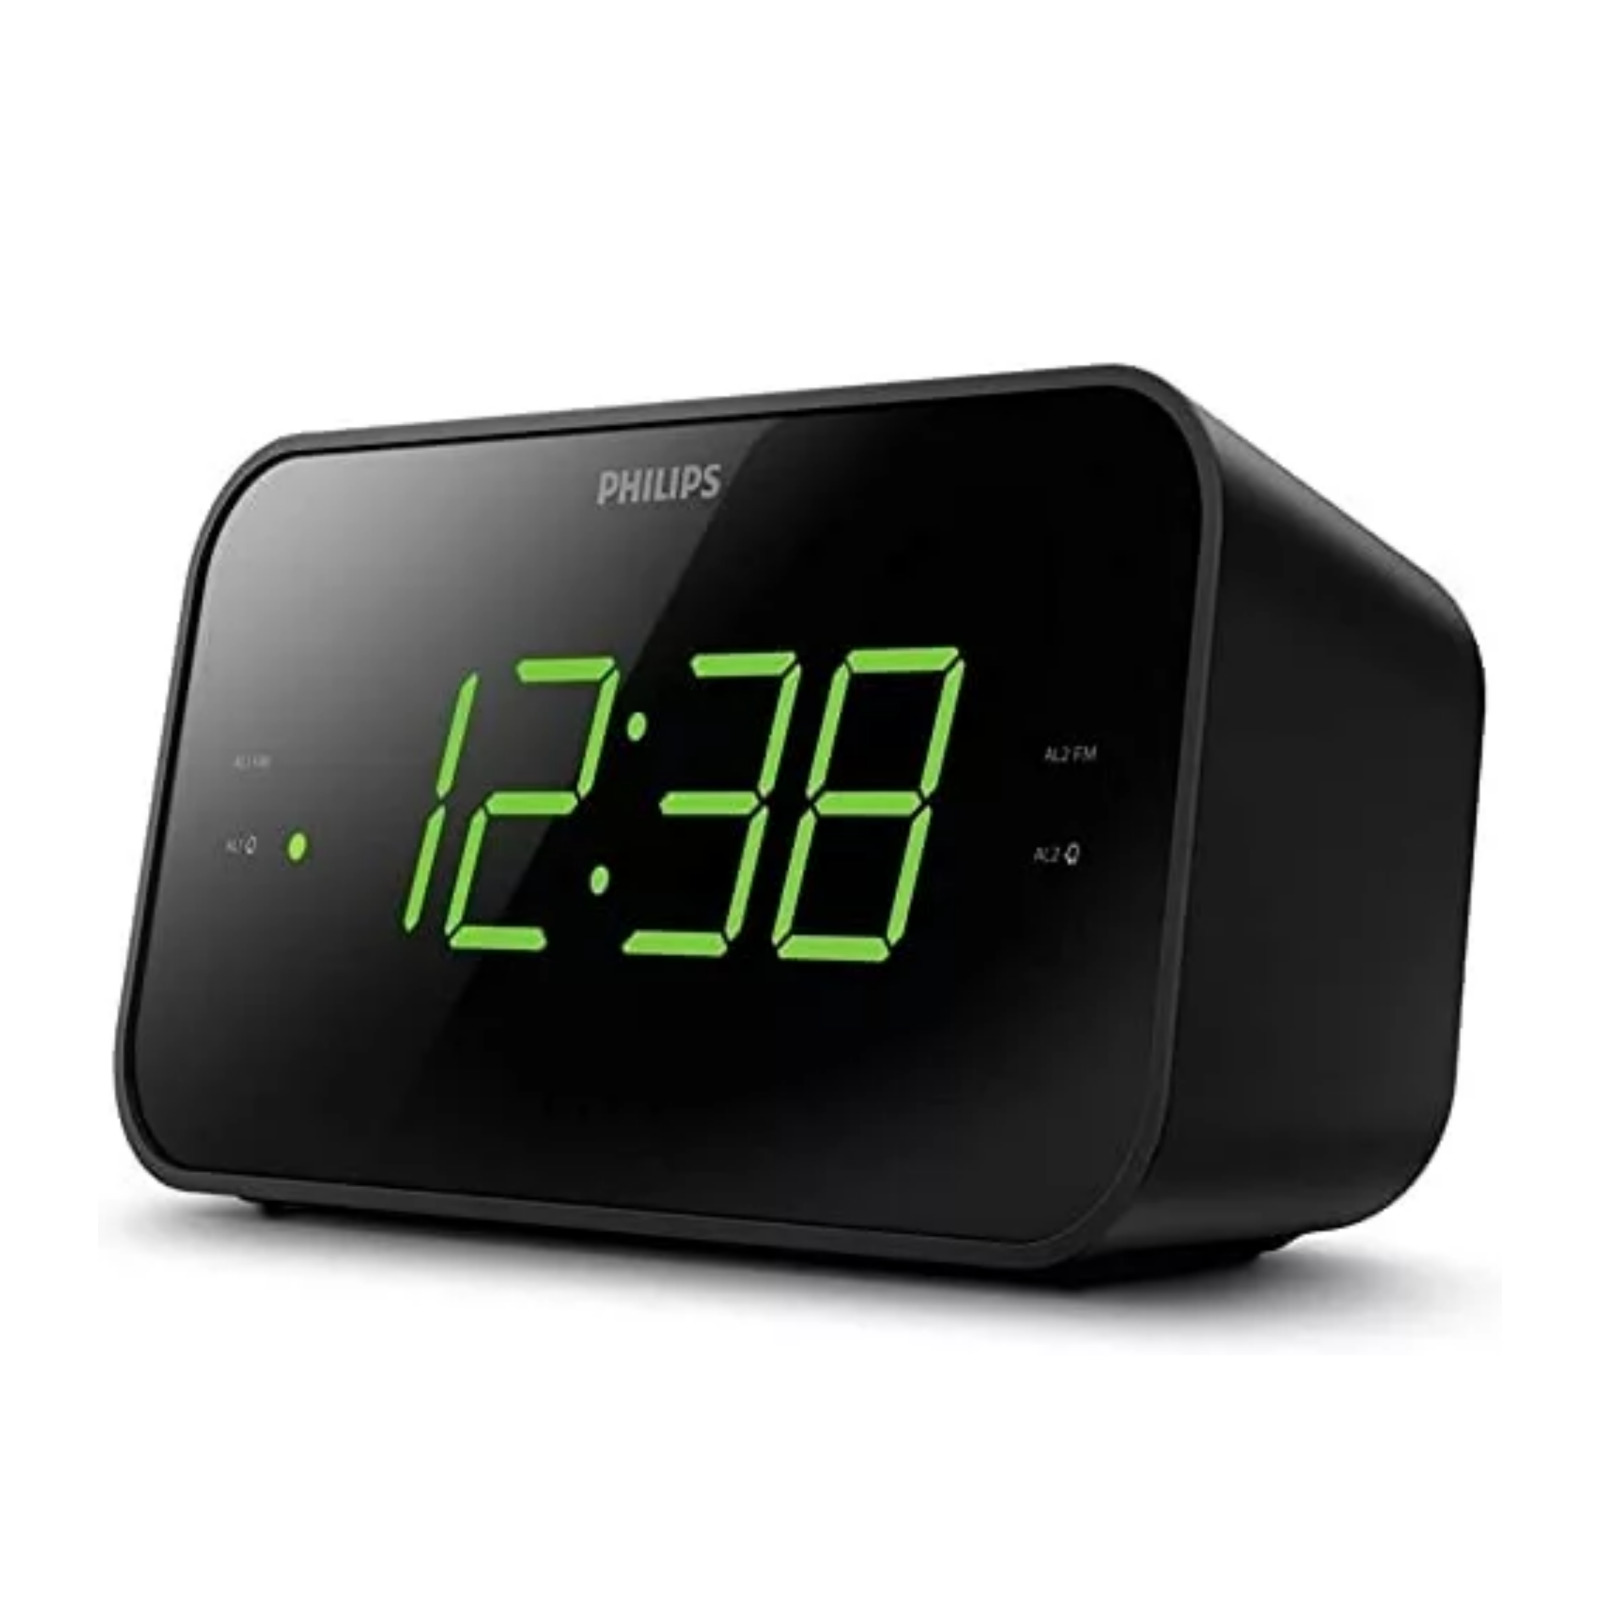 PHILIPS Alarm Clock Digital Clock Radio, FM Radio Clock with Multiple Functions